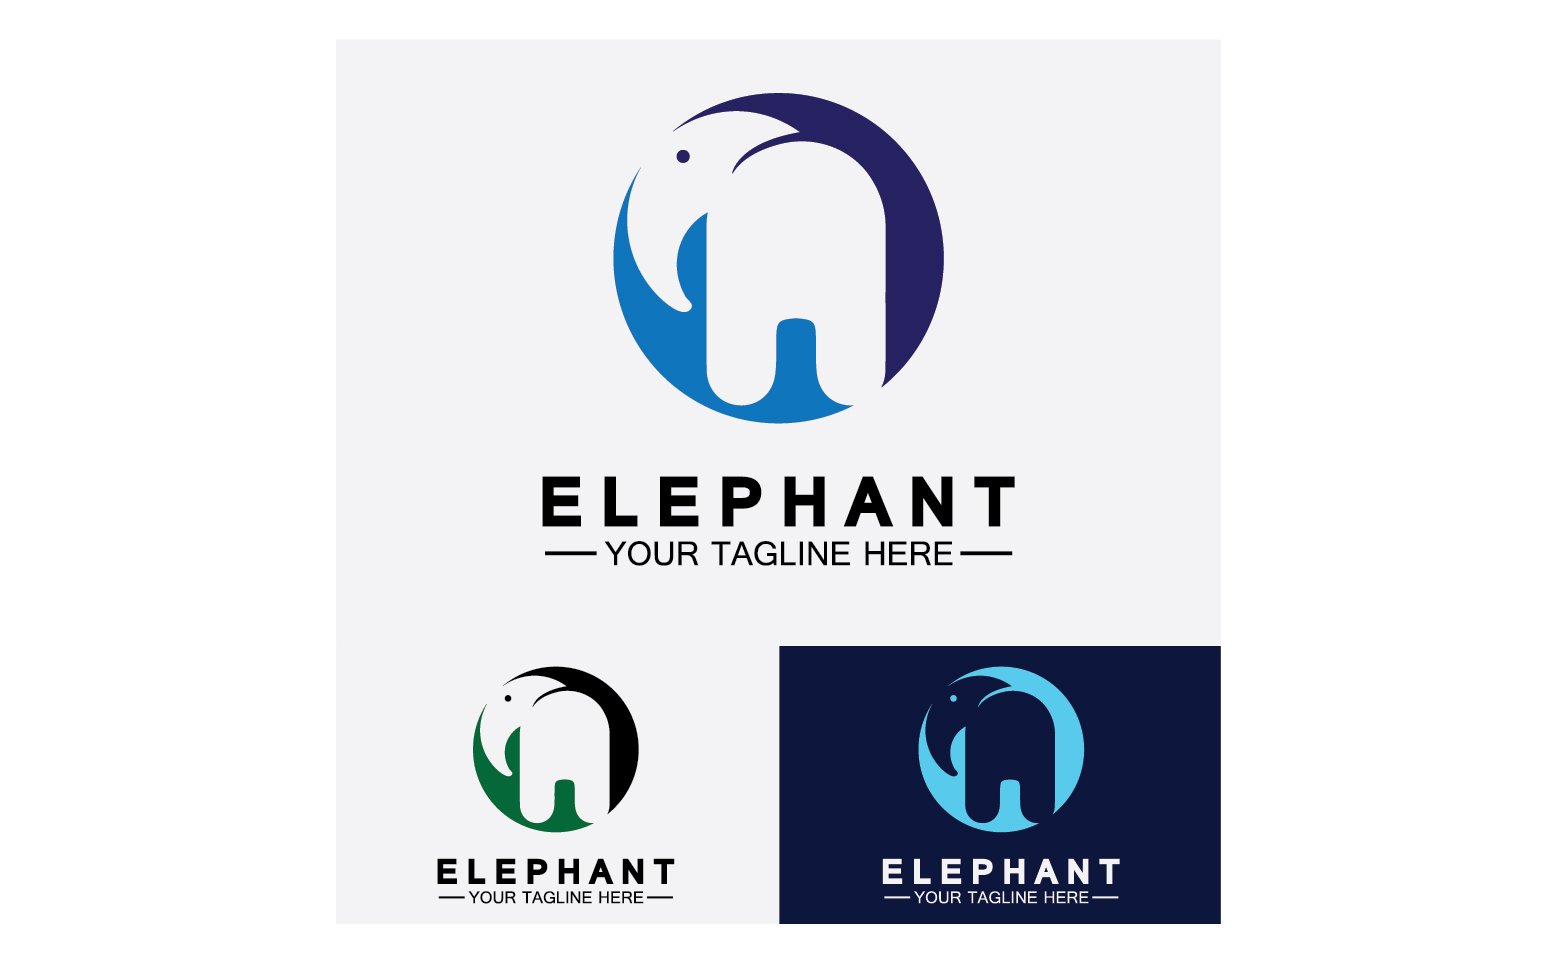 Kit Graphique #355961 Animal Elephant Divers Modles Web - Logo template Preview